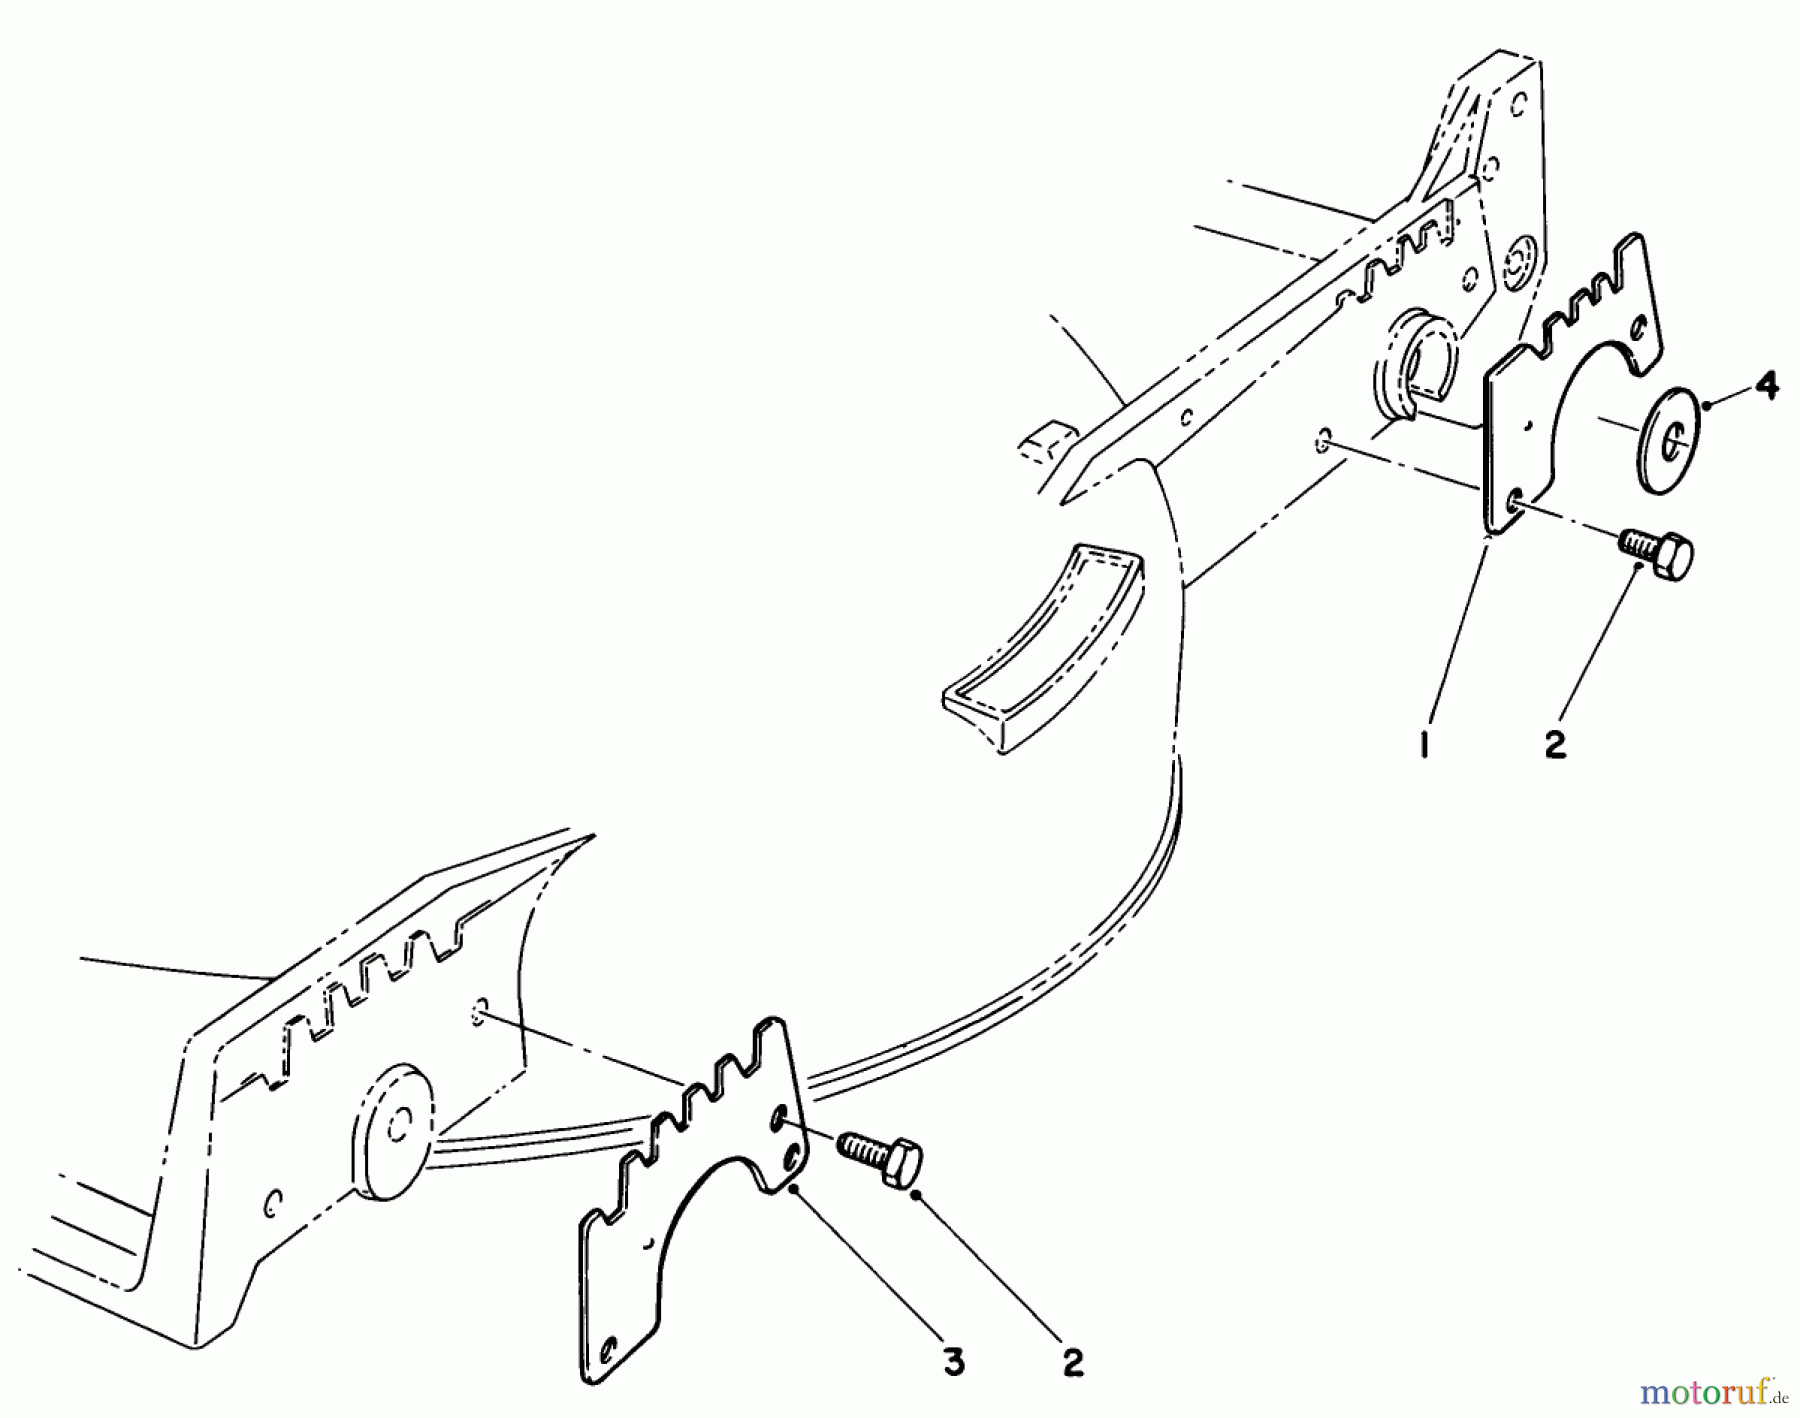  Toro Neu Mowers, Walk-Behind Seite 1 20570 - Toro Lawnmower, 1985 (5000001-5999999) WEAR PLATE KIT NO. 49-4080 (OPTIONAL)